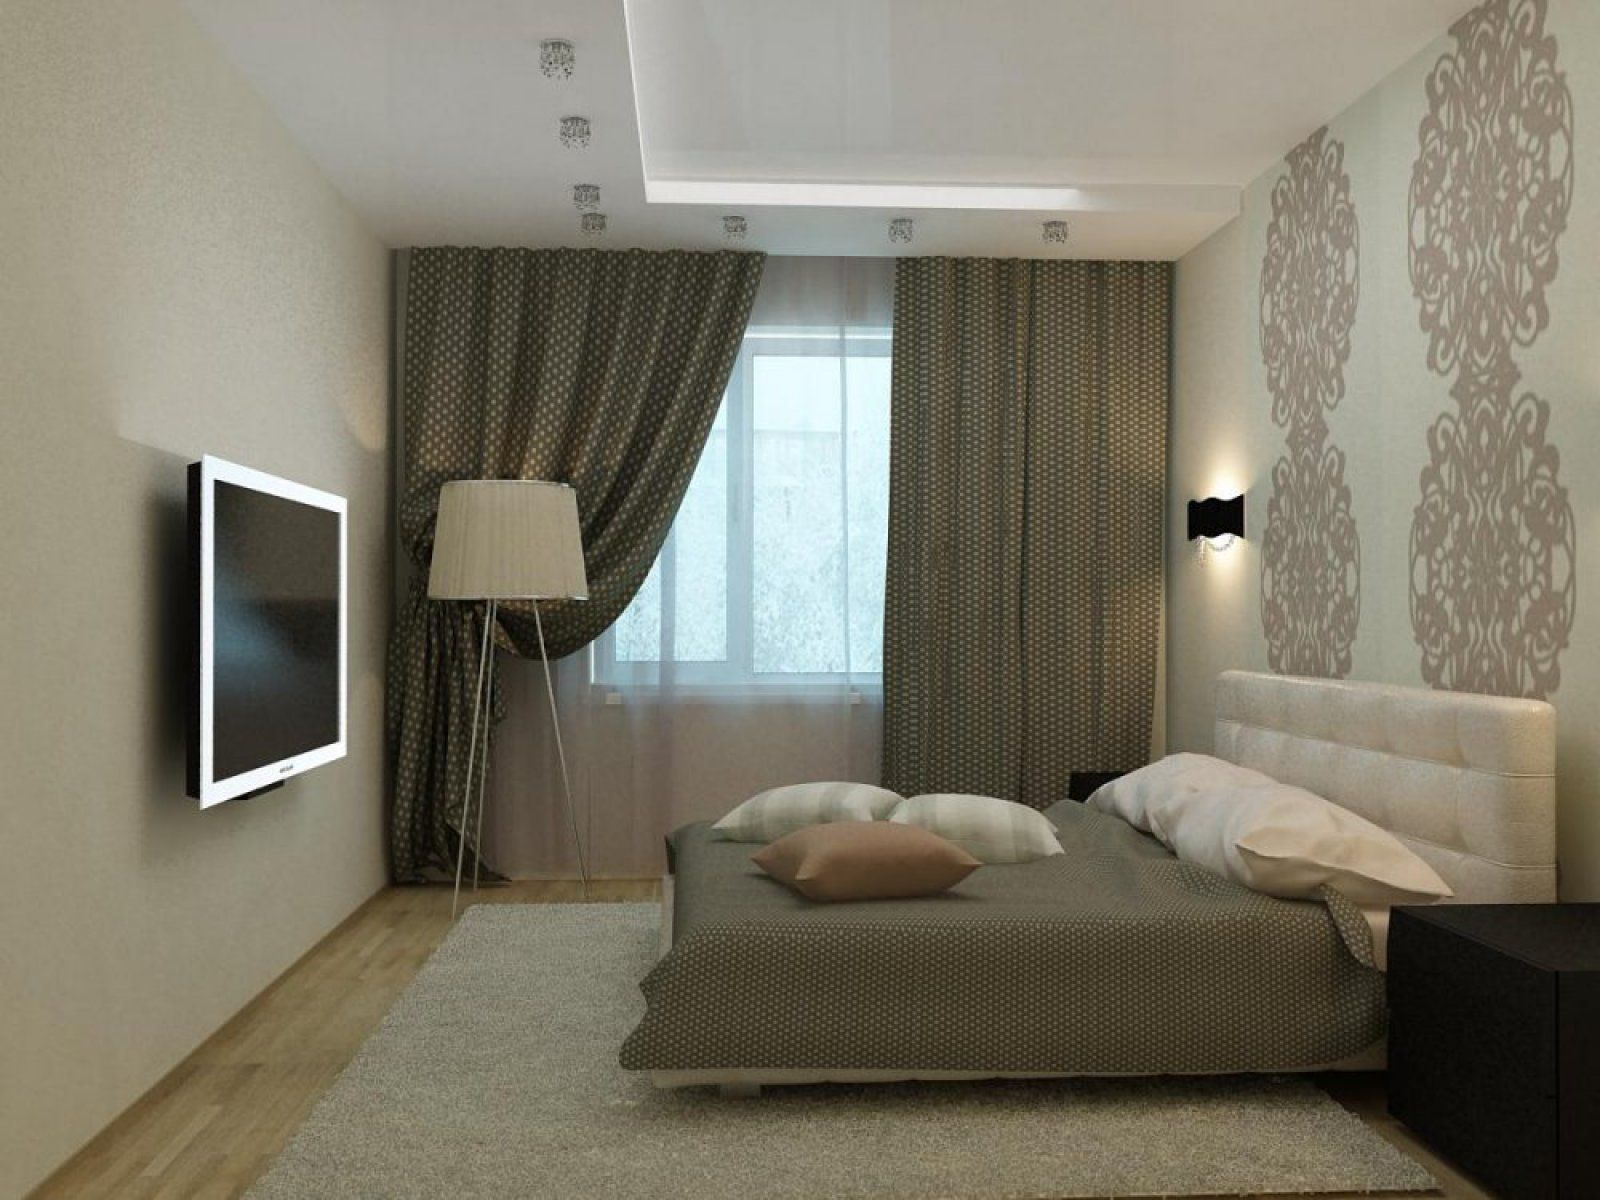 Как оформить дизайн интерьера спальни – практические советы опытных дизайнеров